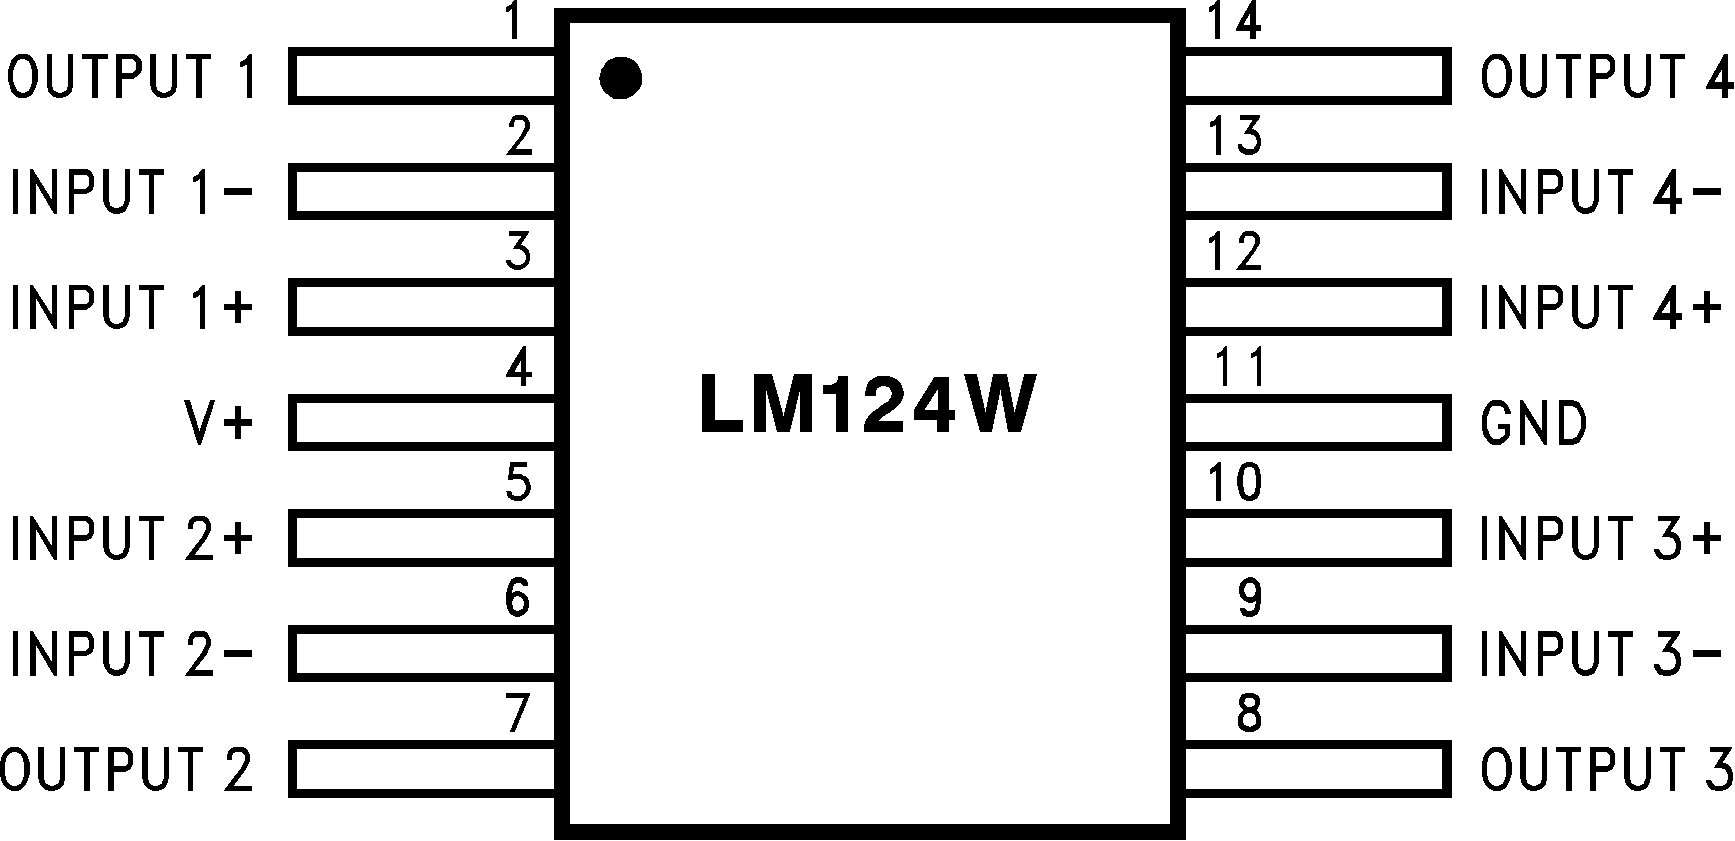 LM124-N LM224-N LM2902-N LM324-N 929933.png